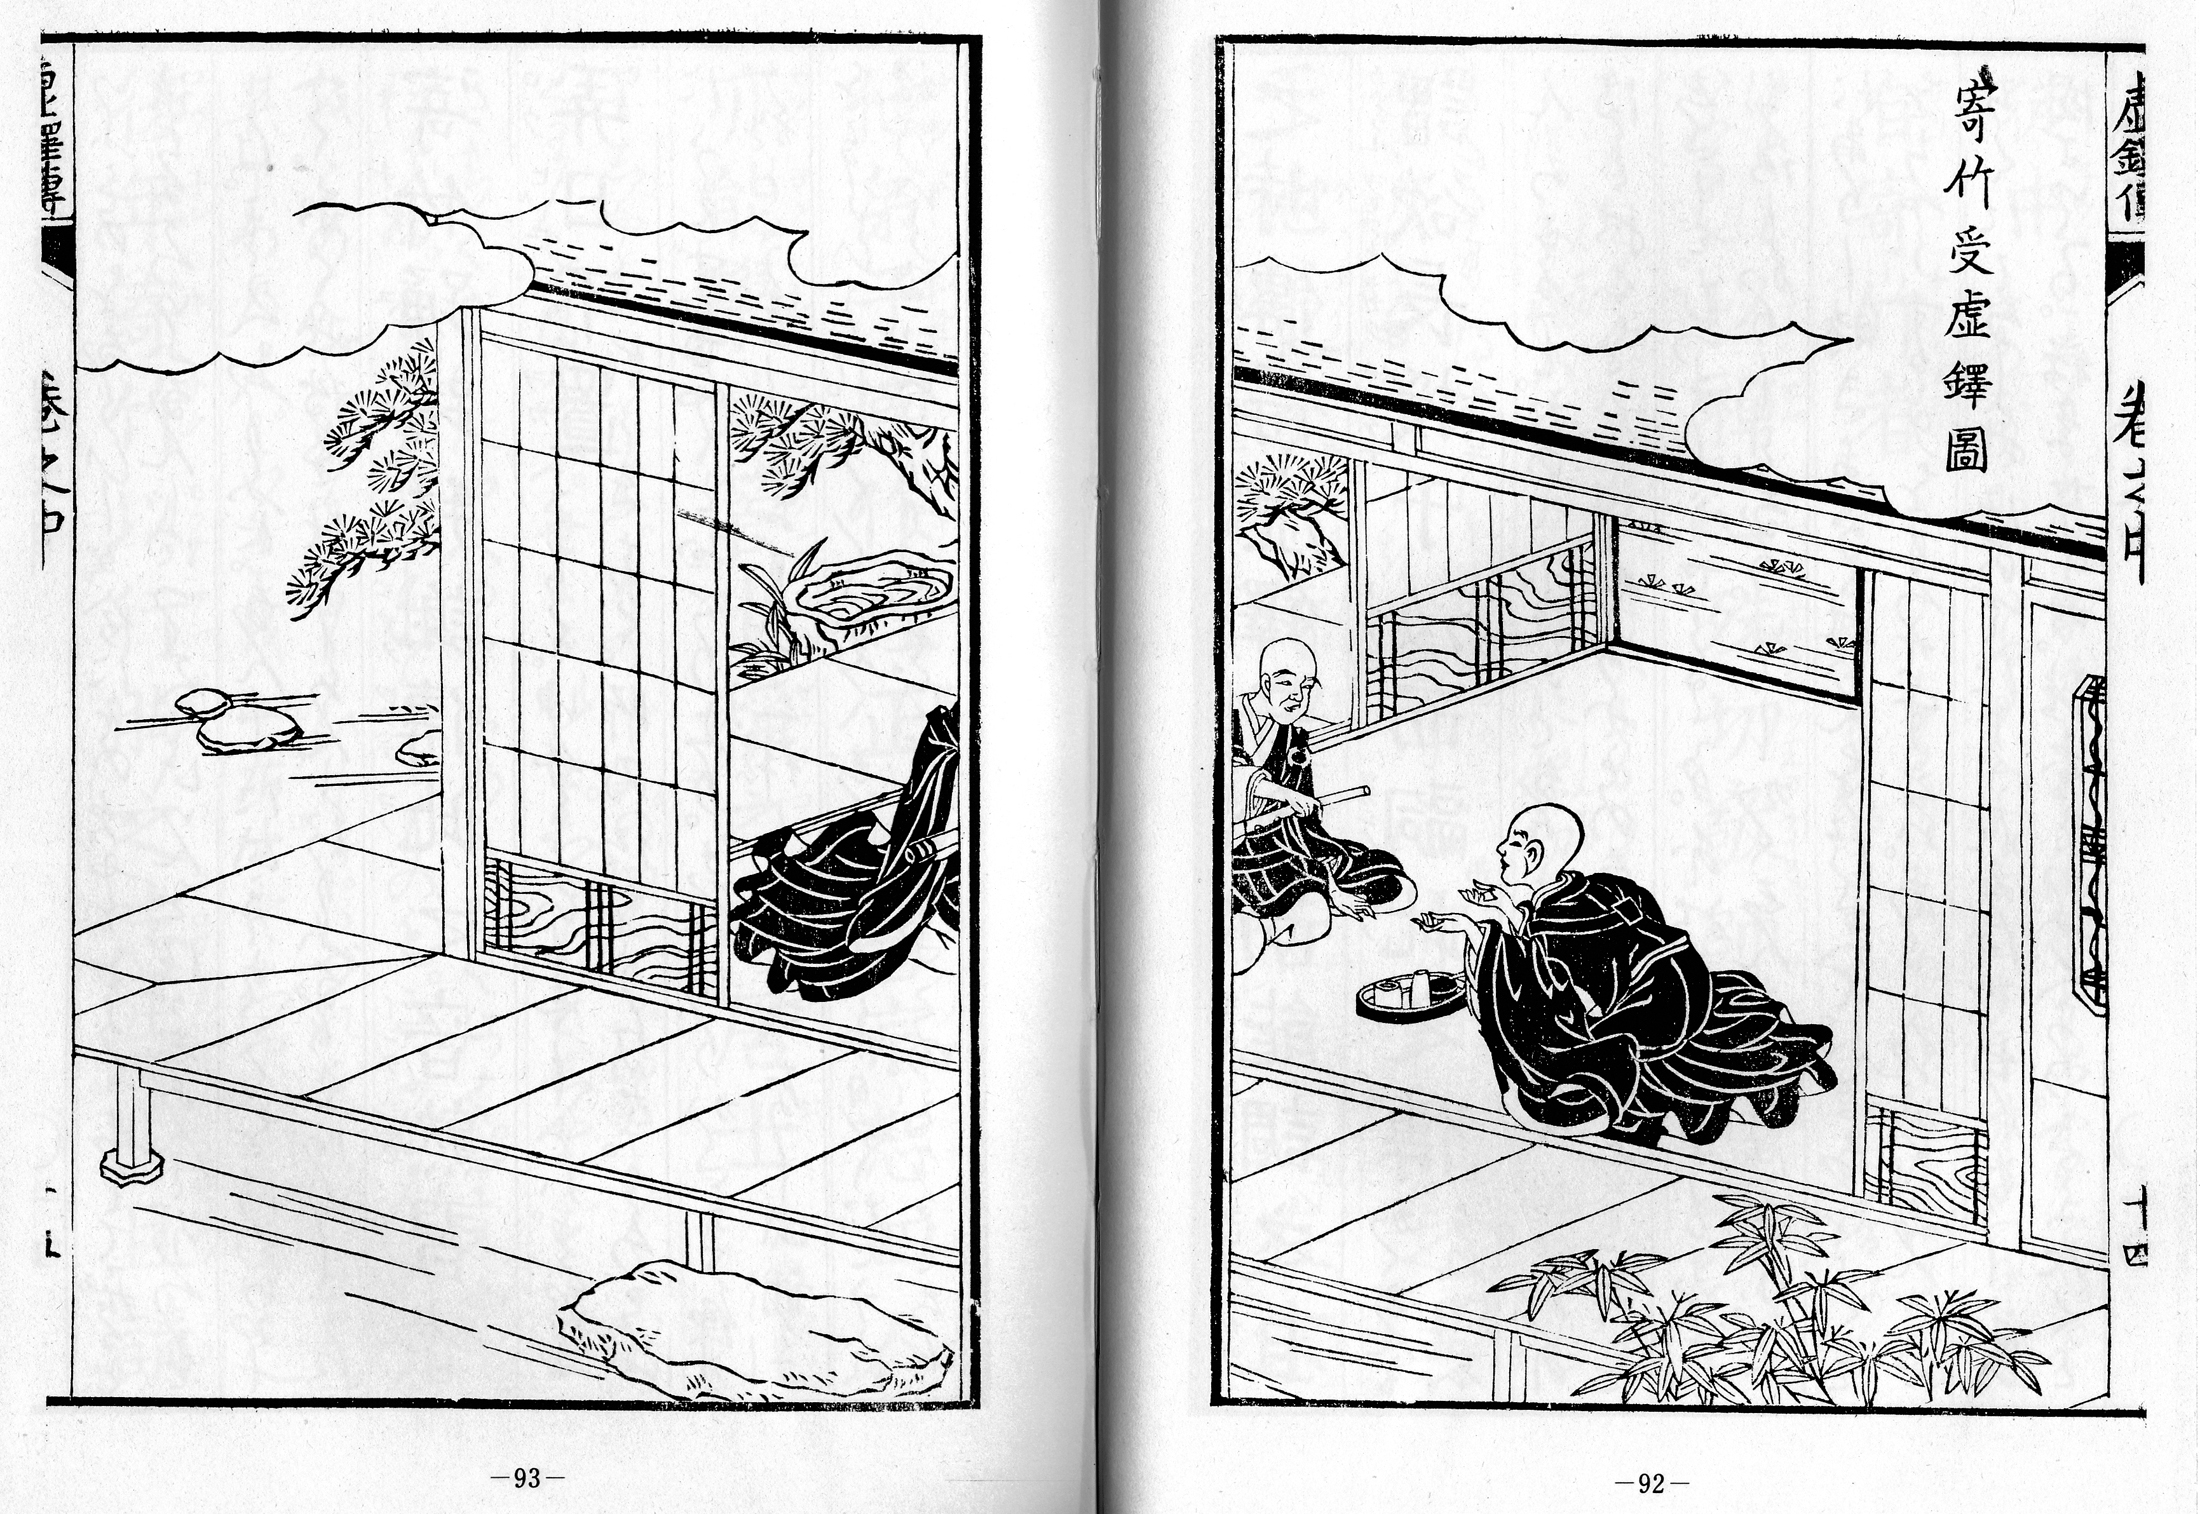 Kyotaku denki kokujikai illustration pp. 92-93